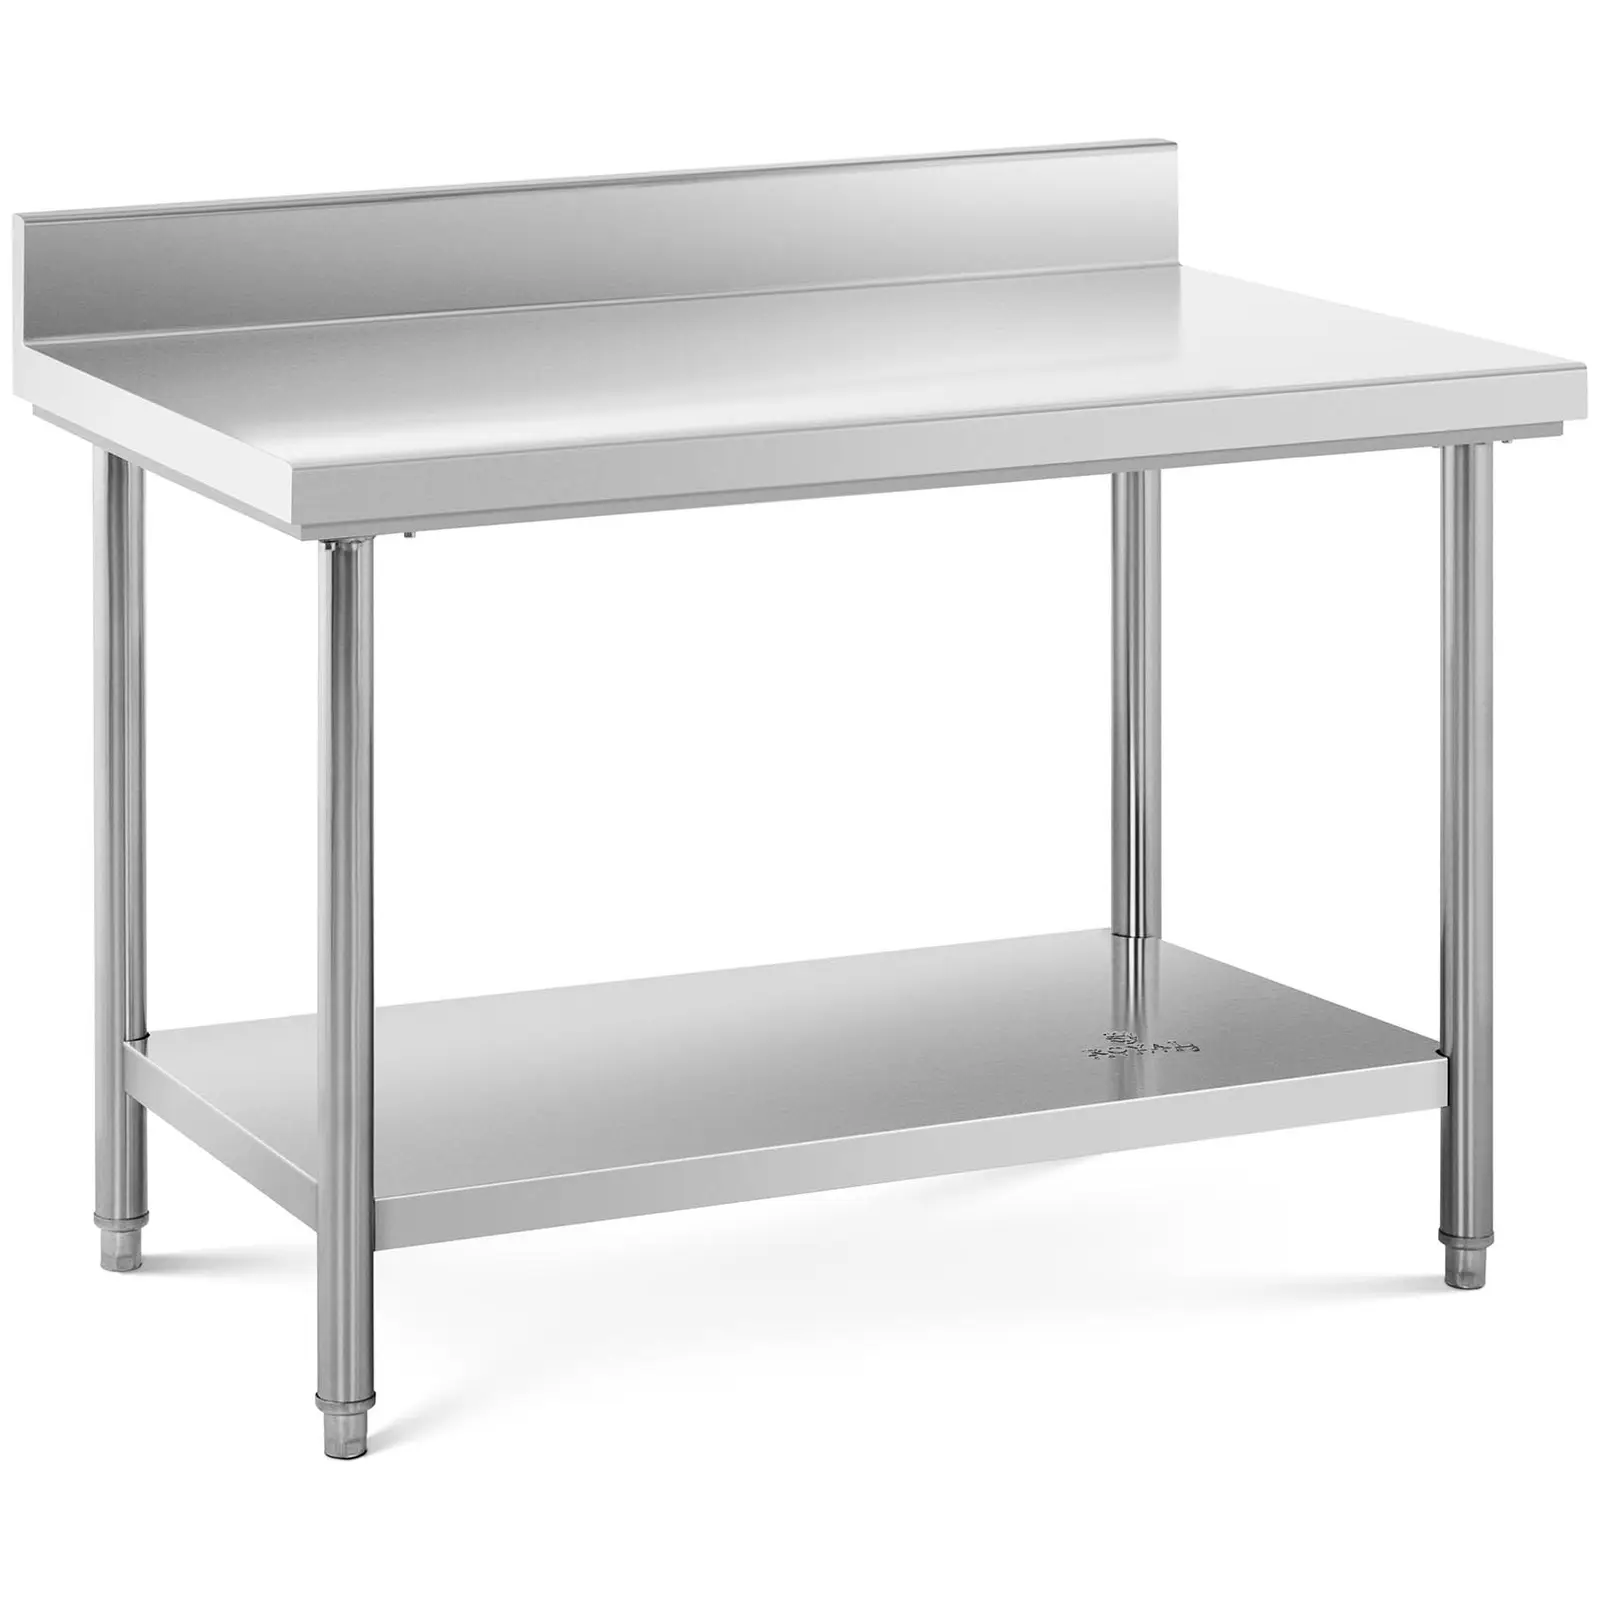 Pracovní stůl z ušlechtilé oceli - 120 x 70 cm - s lemem - nosnost 143 kg